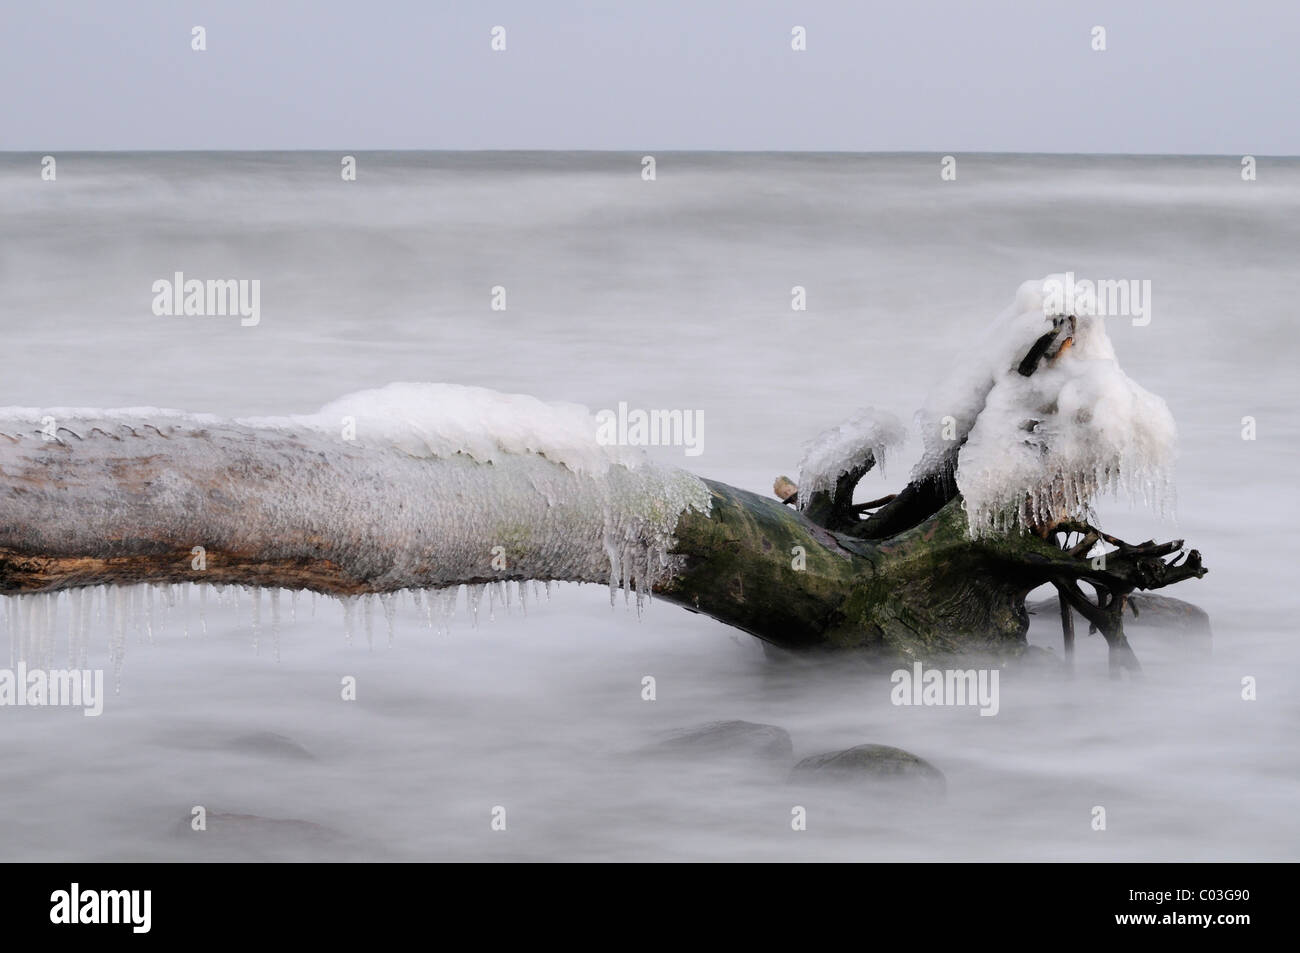 Tronco de árbol cubierto de hielo en el Mar Báltico, el Parque Nacional de Jasmund, Ruegen Island, en el Estado federado de Mecklemburgo-Pomerania Foto de stock